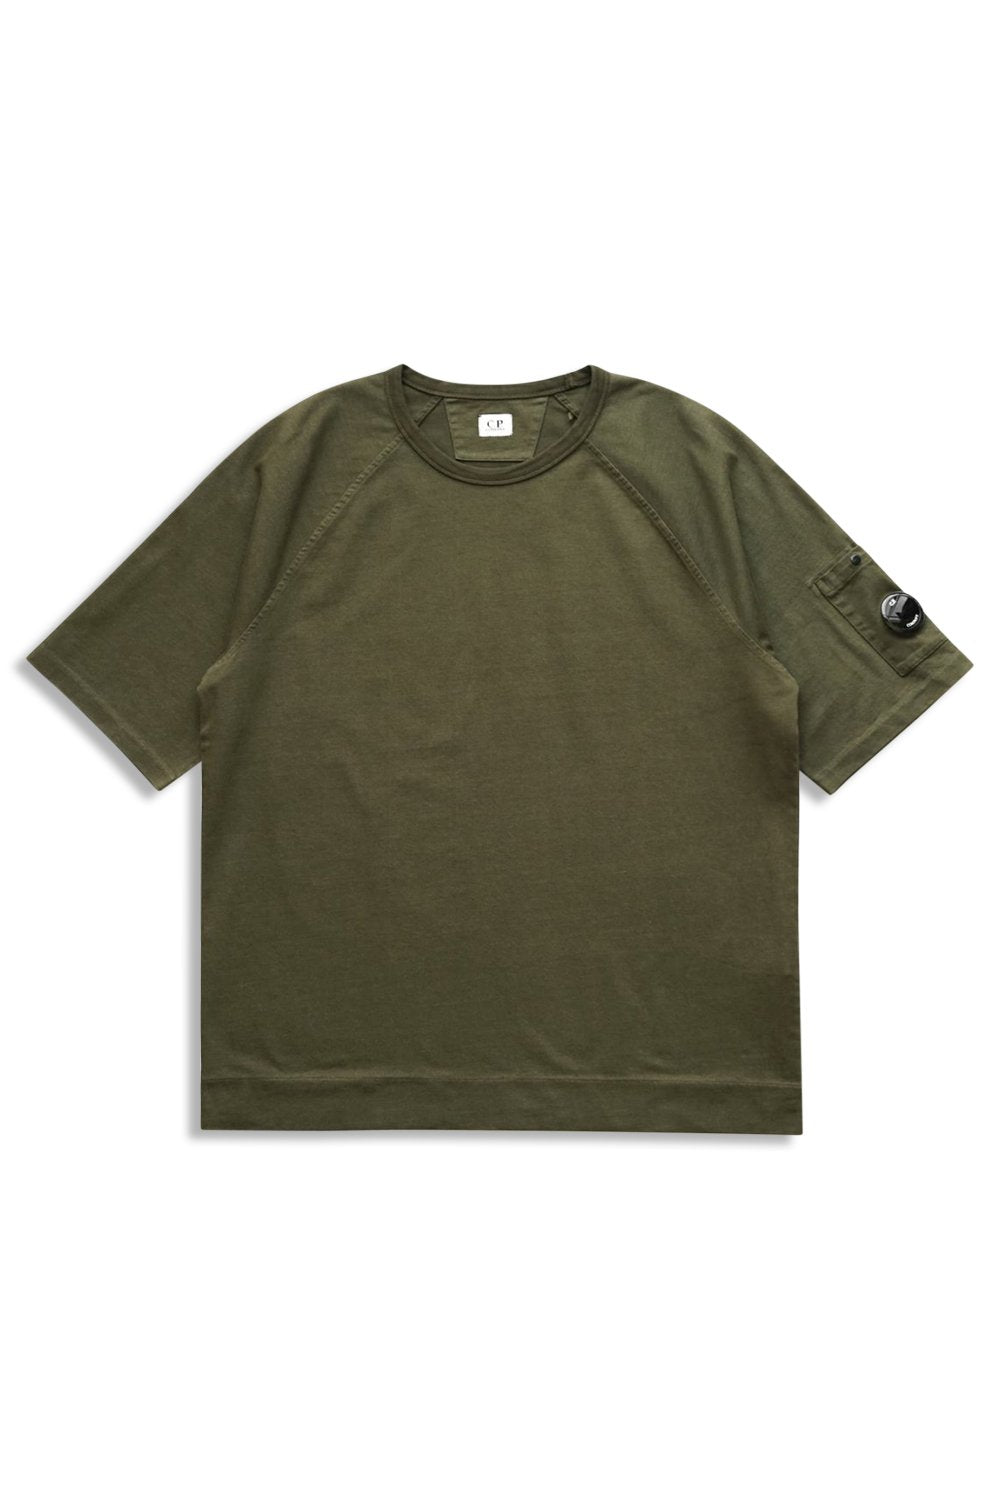 Men's Khaki C.P. Company Heavy Jersey Mixed Short Sleeve Sweatshirt